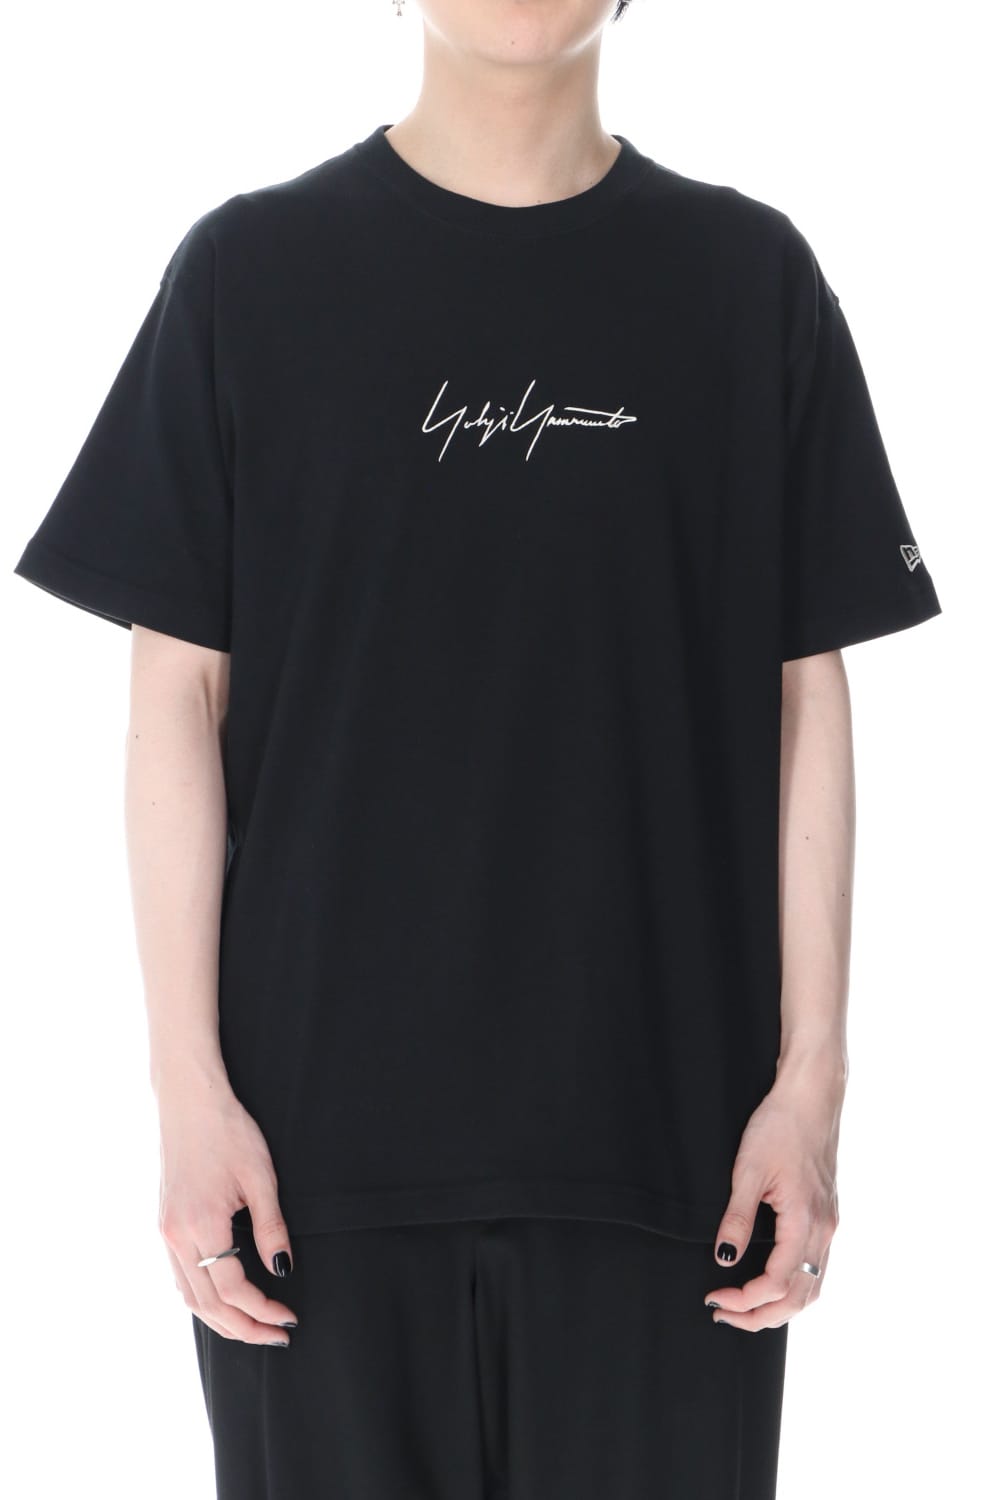 yohjiyamamoto × new era のコラボレーションTシャツ。購入を検討しております